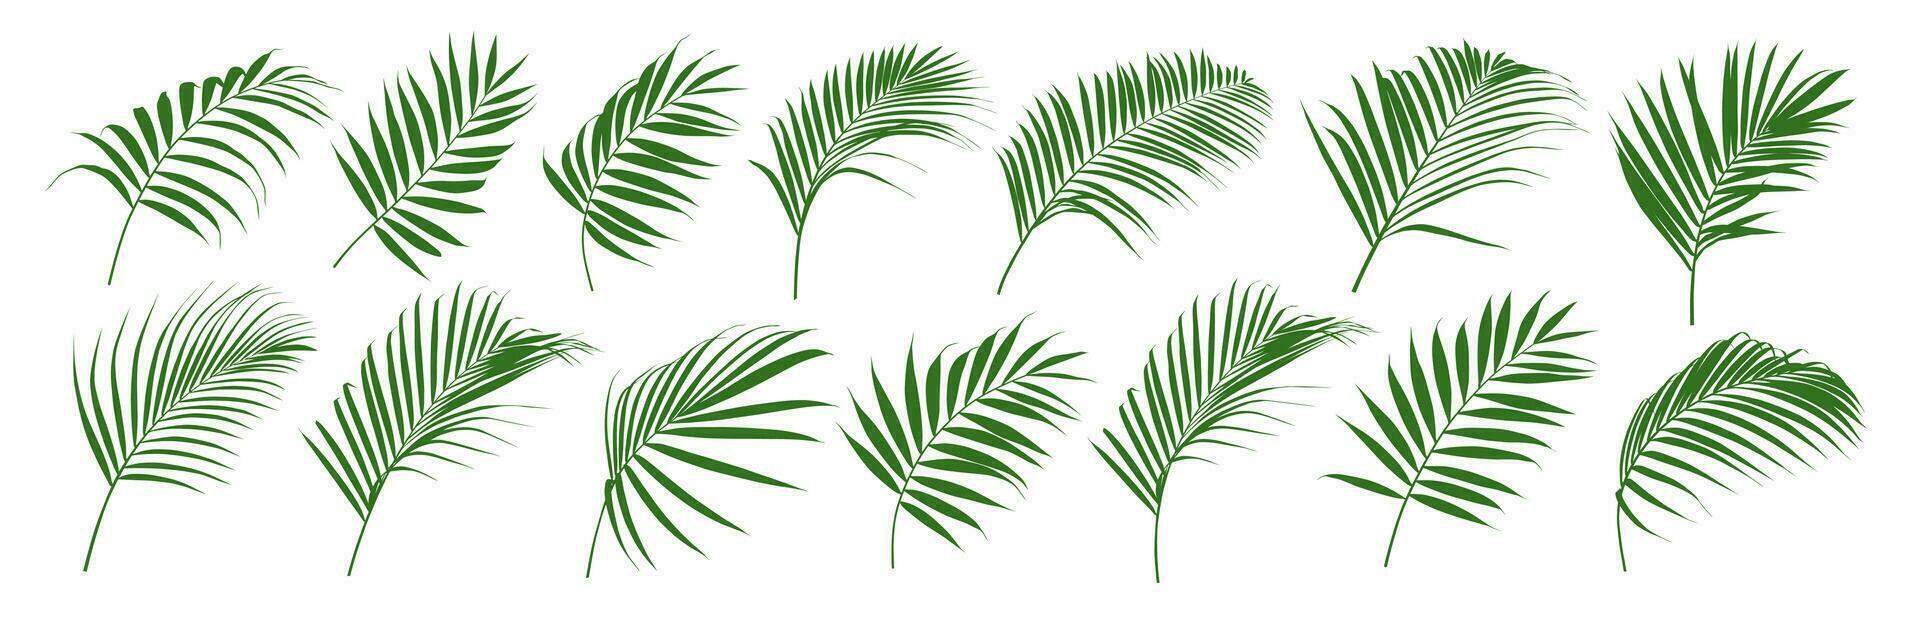 reeks van palm blad en kokosnoot blad vector illustrator